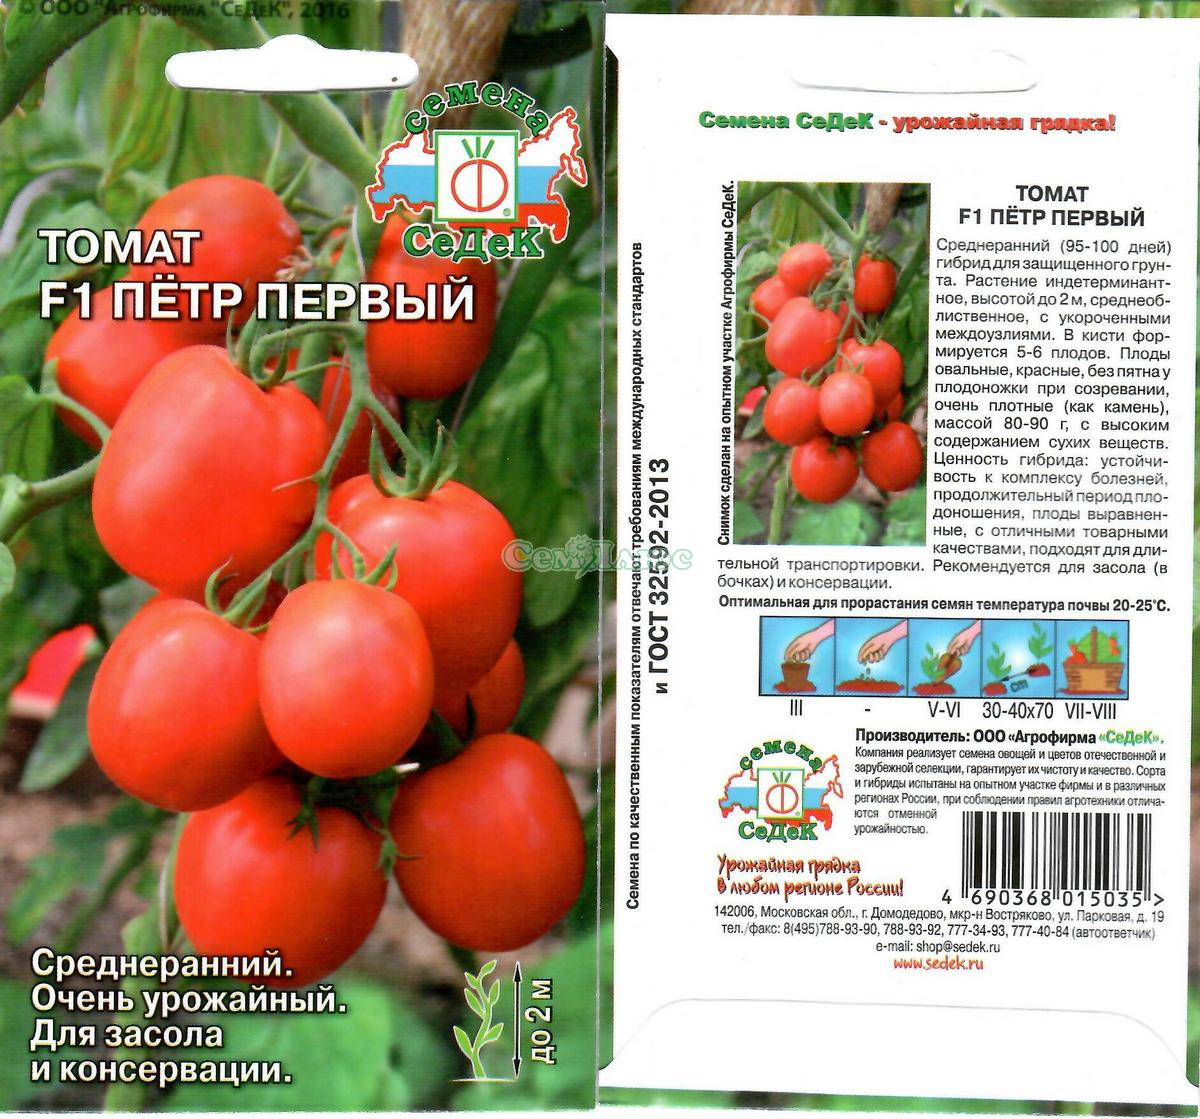 Томат царь петр. щедрые урожаи красивых и очень вкусных томатов — царь пётр: описание и характеристики сорта | зелёный сад